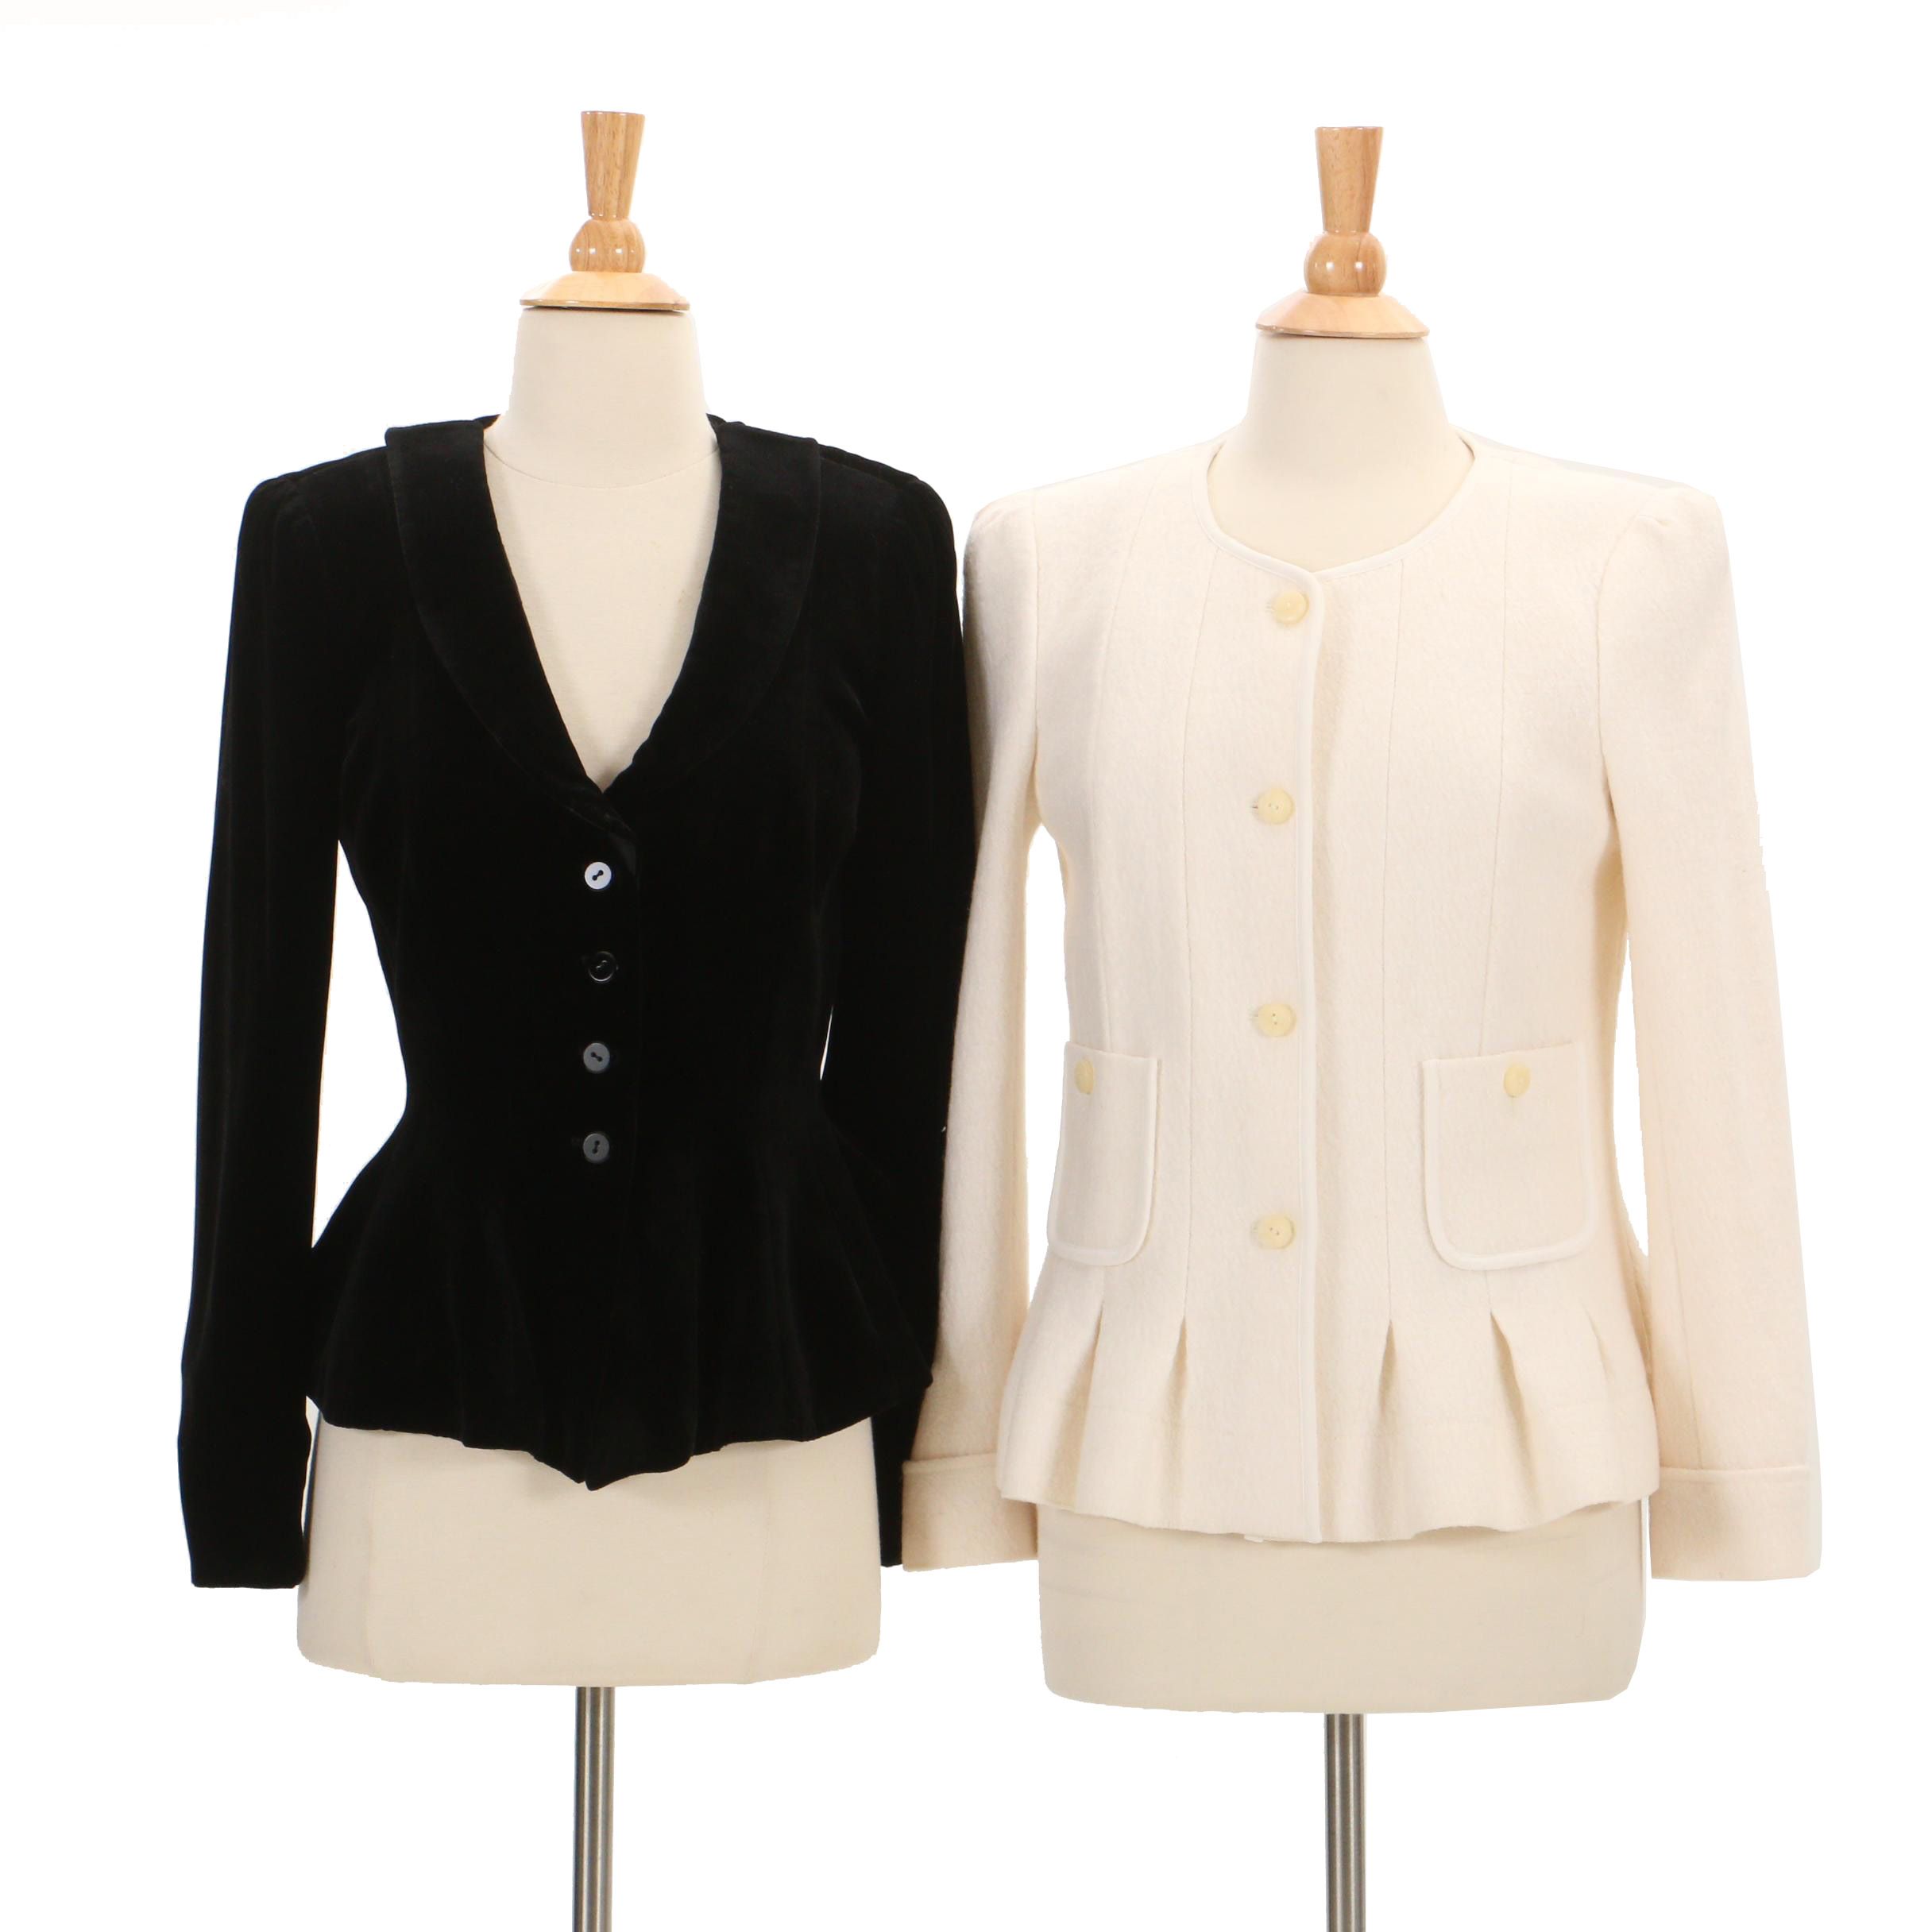 armani women's jackets collezioni